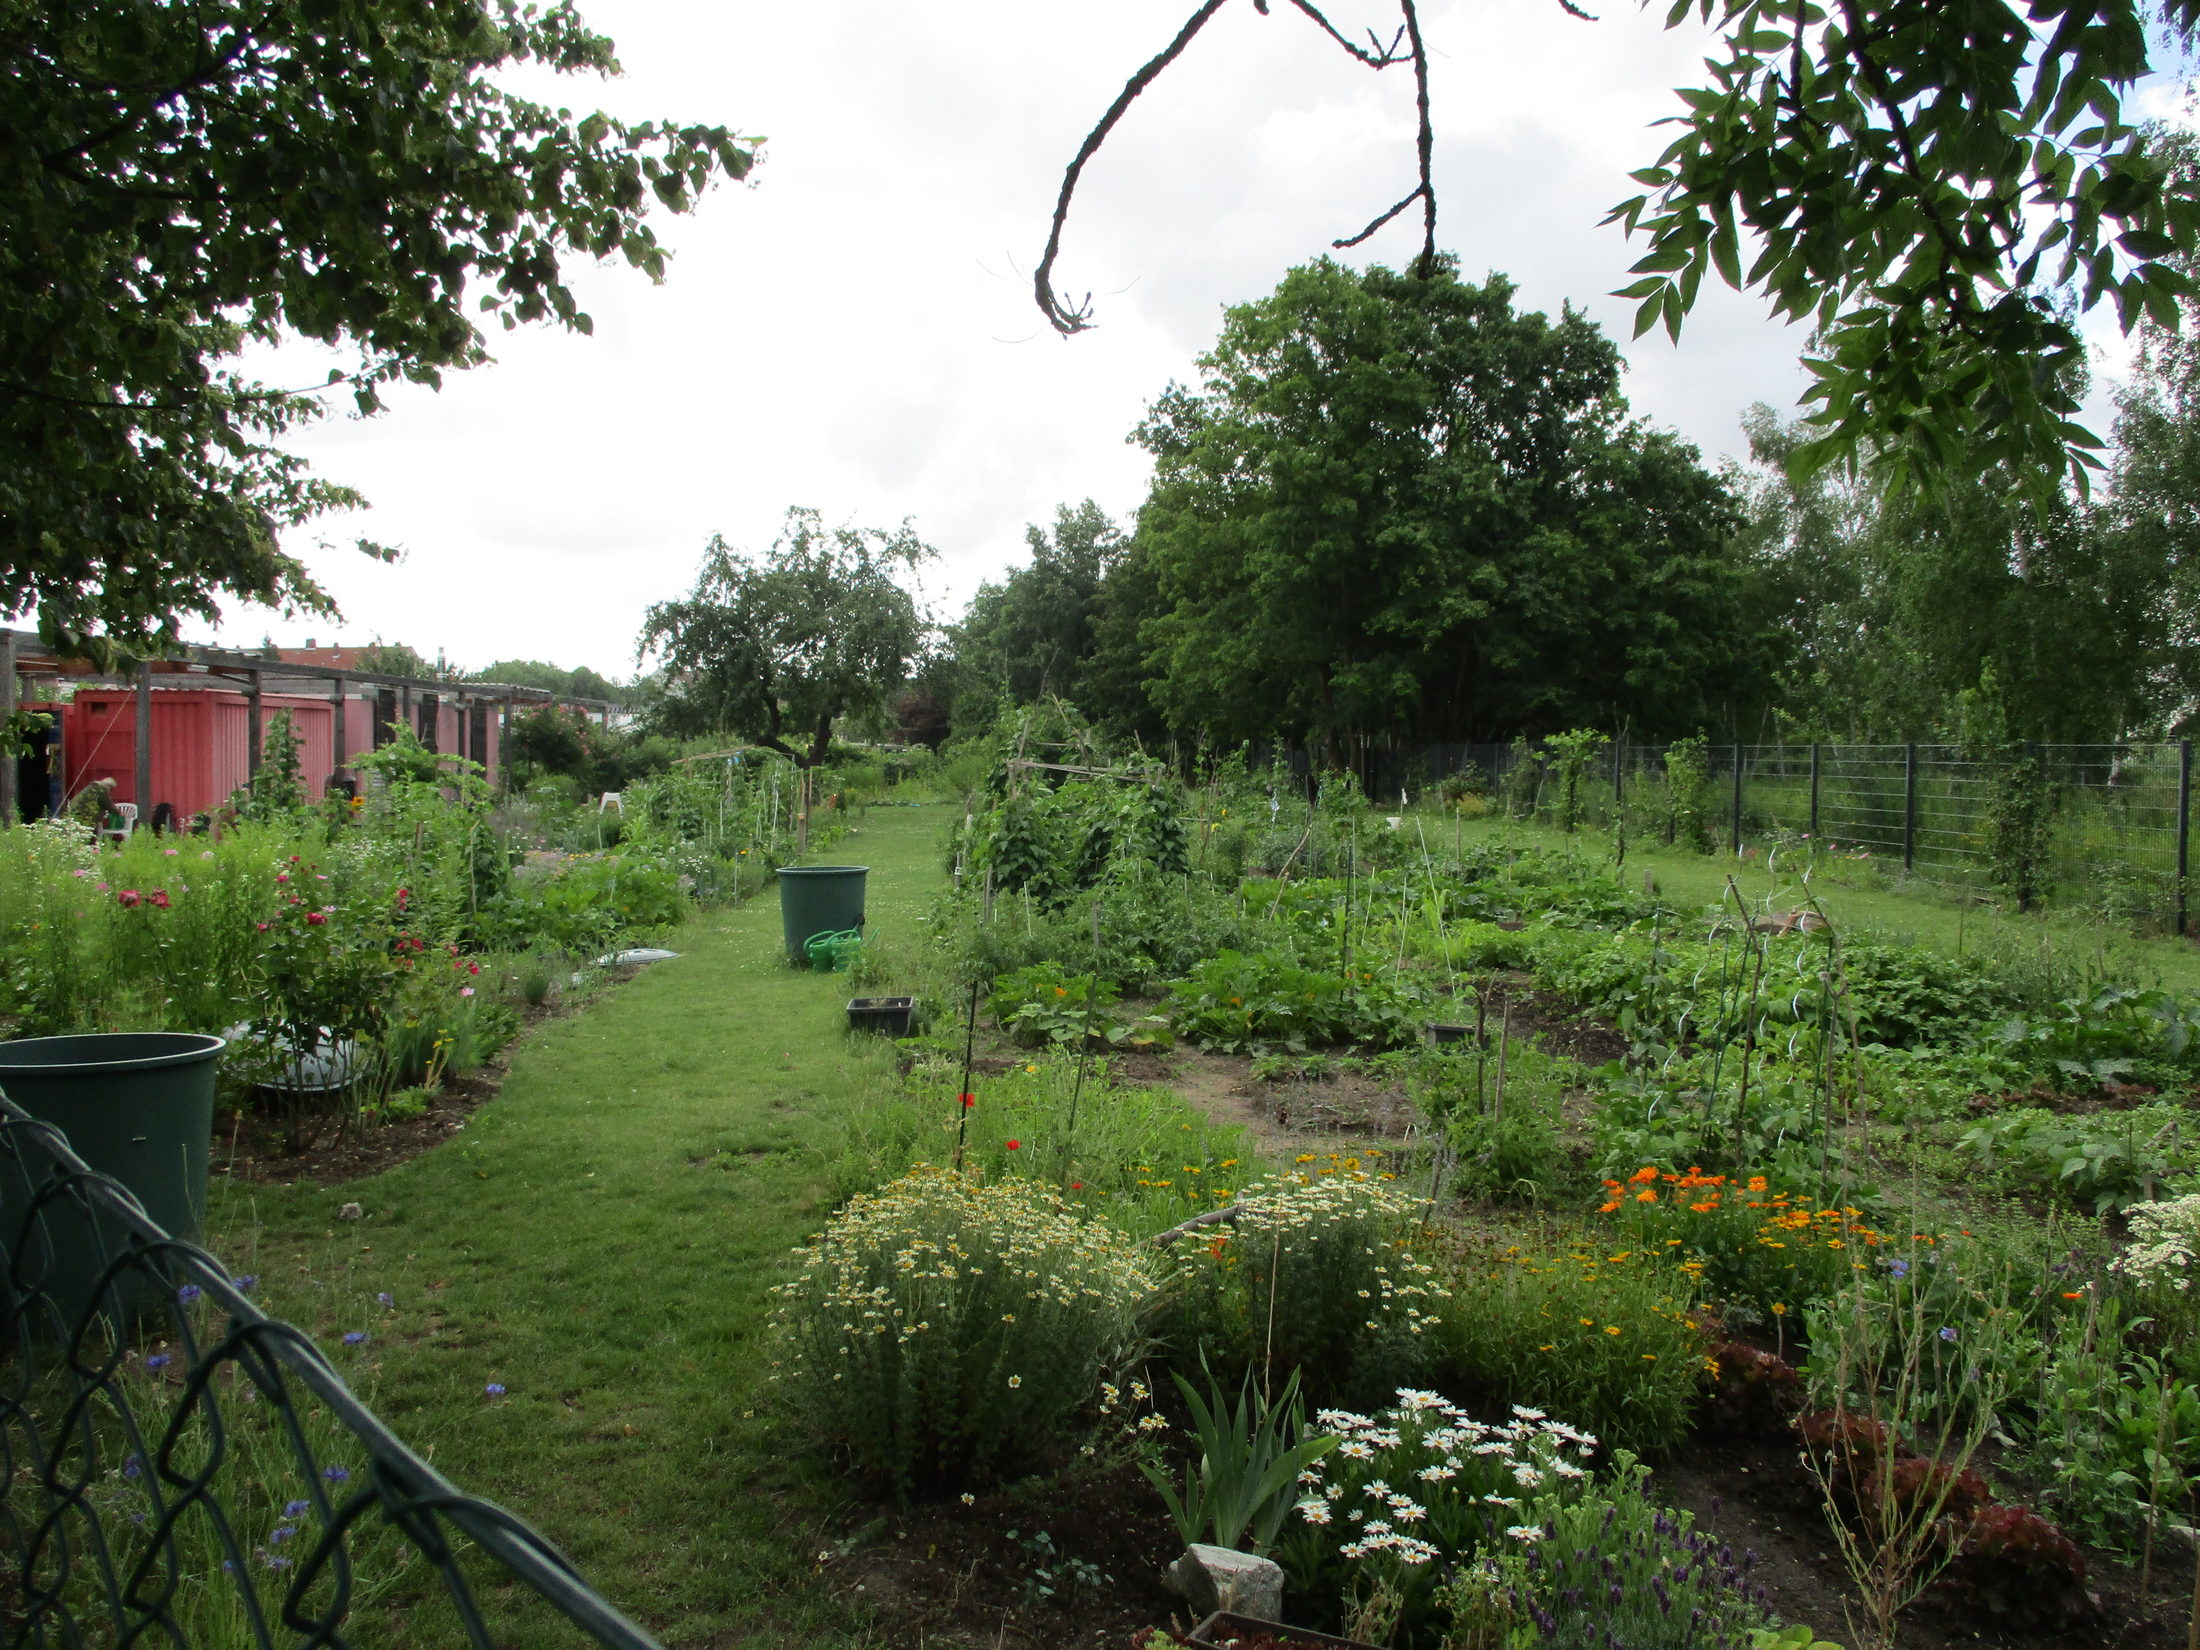 Dieses Bild zeigt einen Ausschnitt aus dem Garten ohne Grenzen in Braunschweig, in dem Gemüse- und Blumenbeete angelegt sind. Ein breiter Rasenweg unterteilt die verschiedenen Parzellen